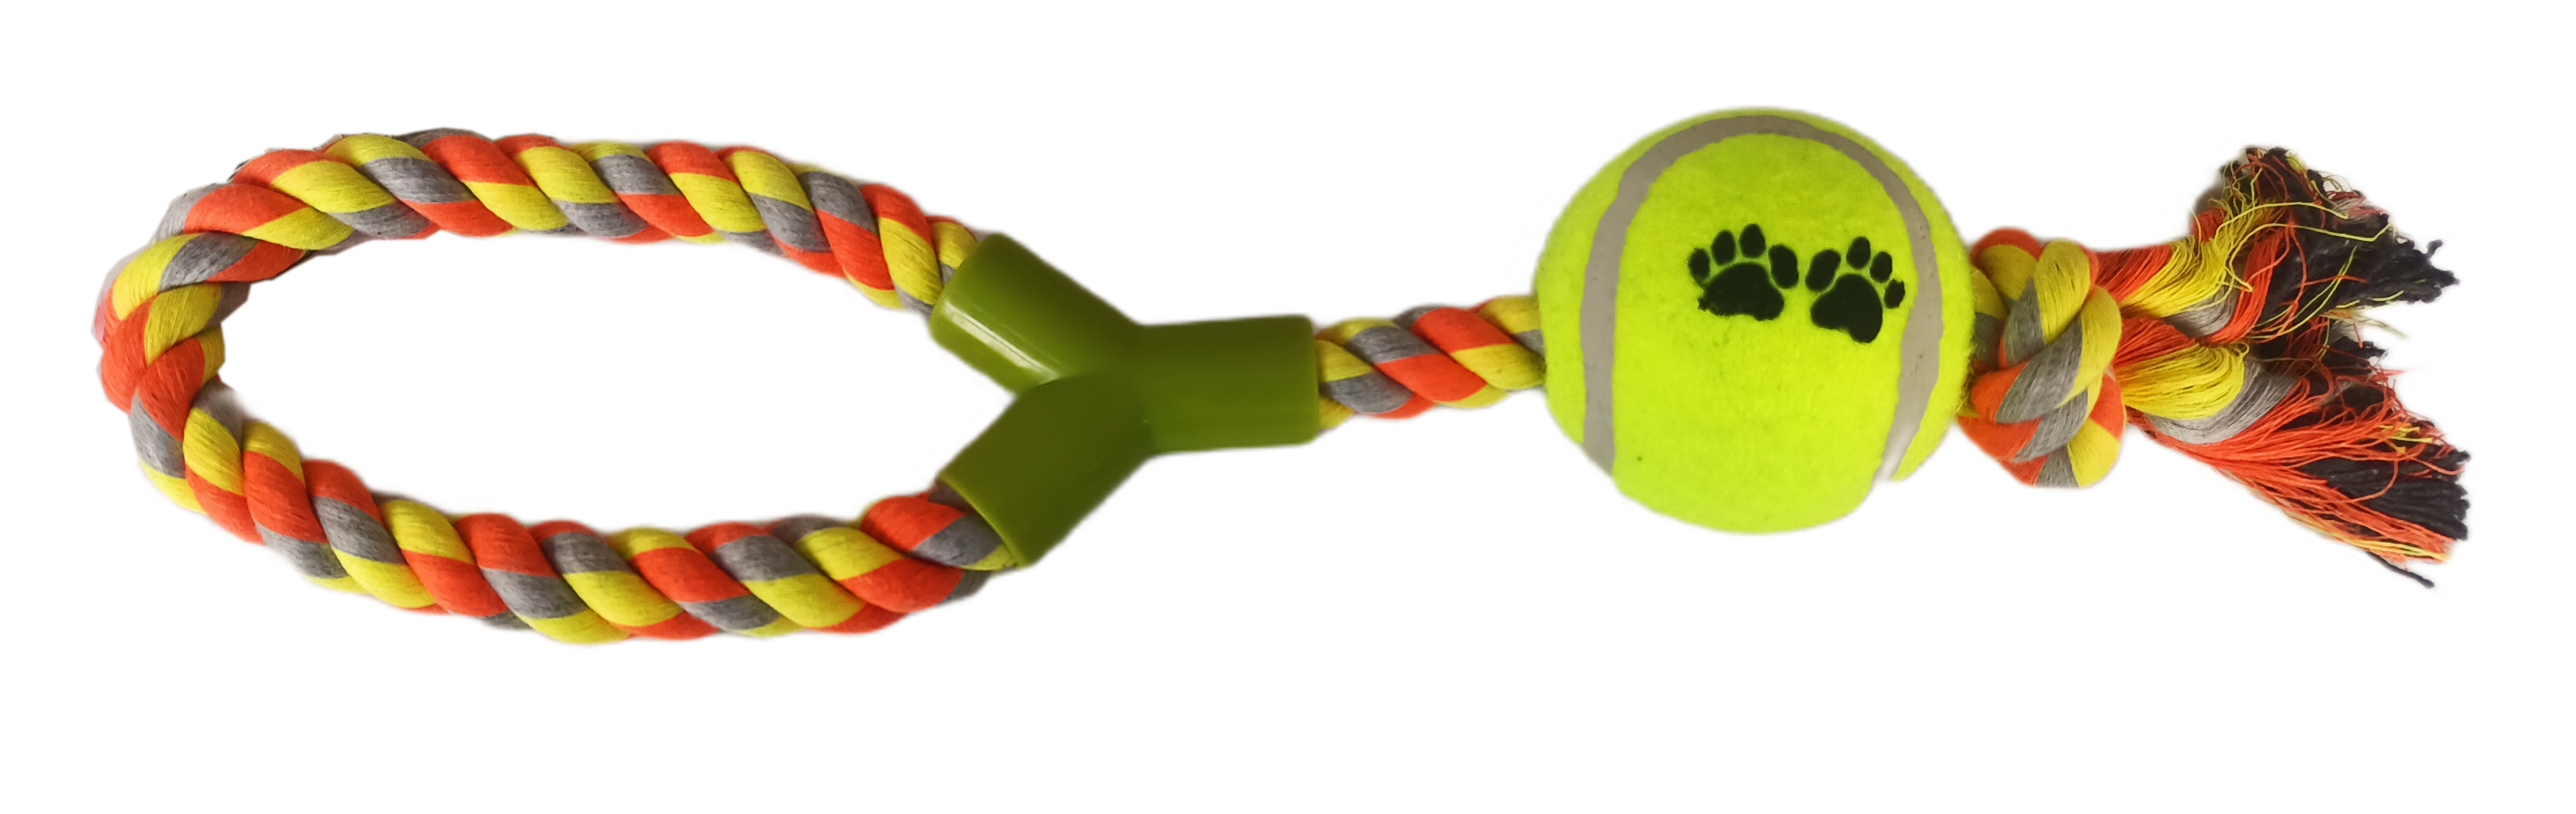 CLZ205 Düğümlü Y Şekilli Tenis Toplu Köpek Oyuncağı 7-37 cm Sarı